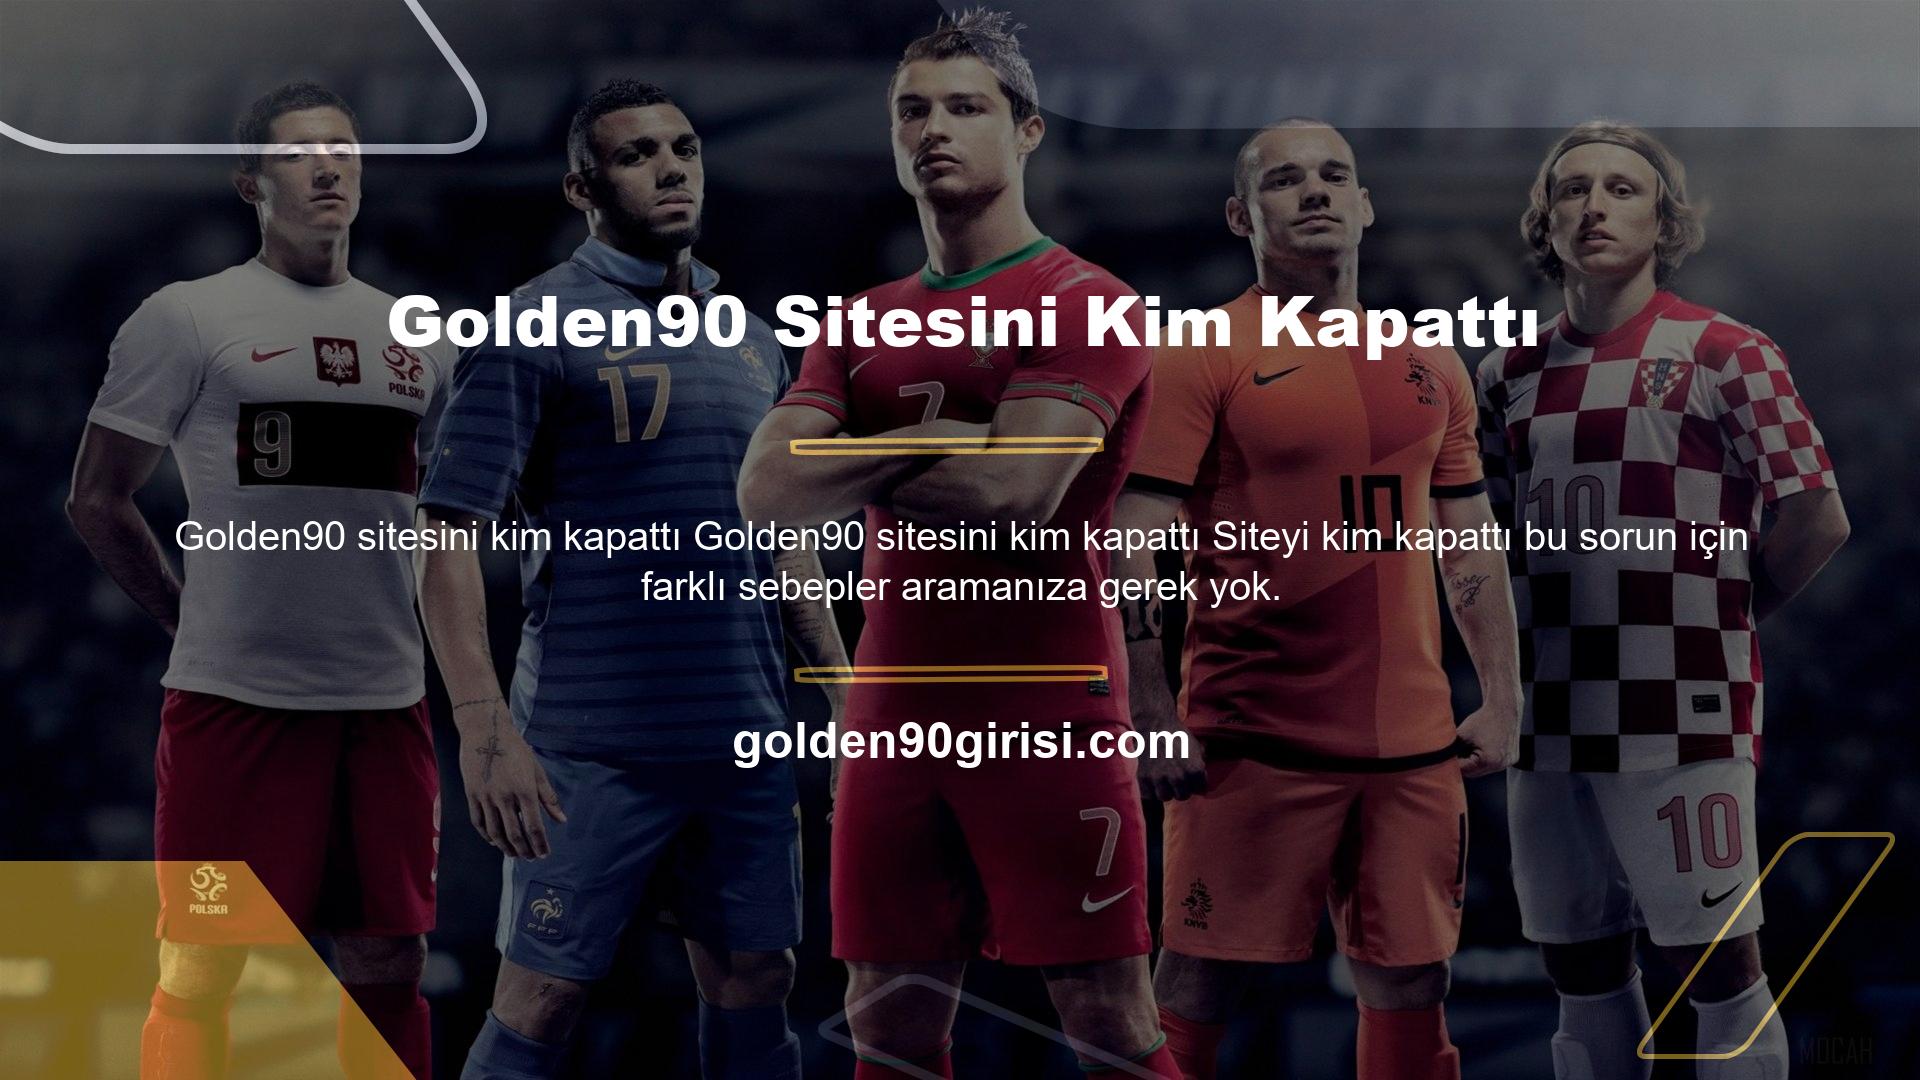 Golden90 sitesi lisans belgelerine uygun olarak faaliyet göstermektedir